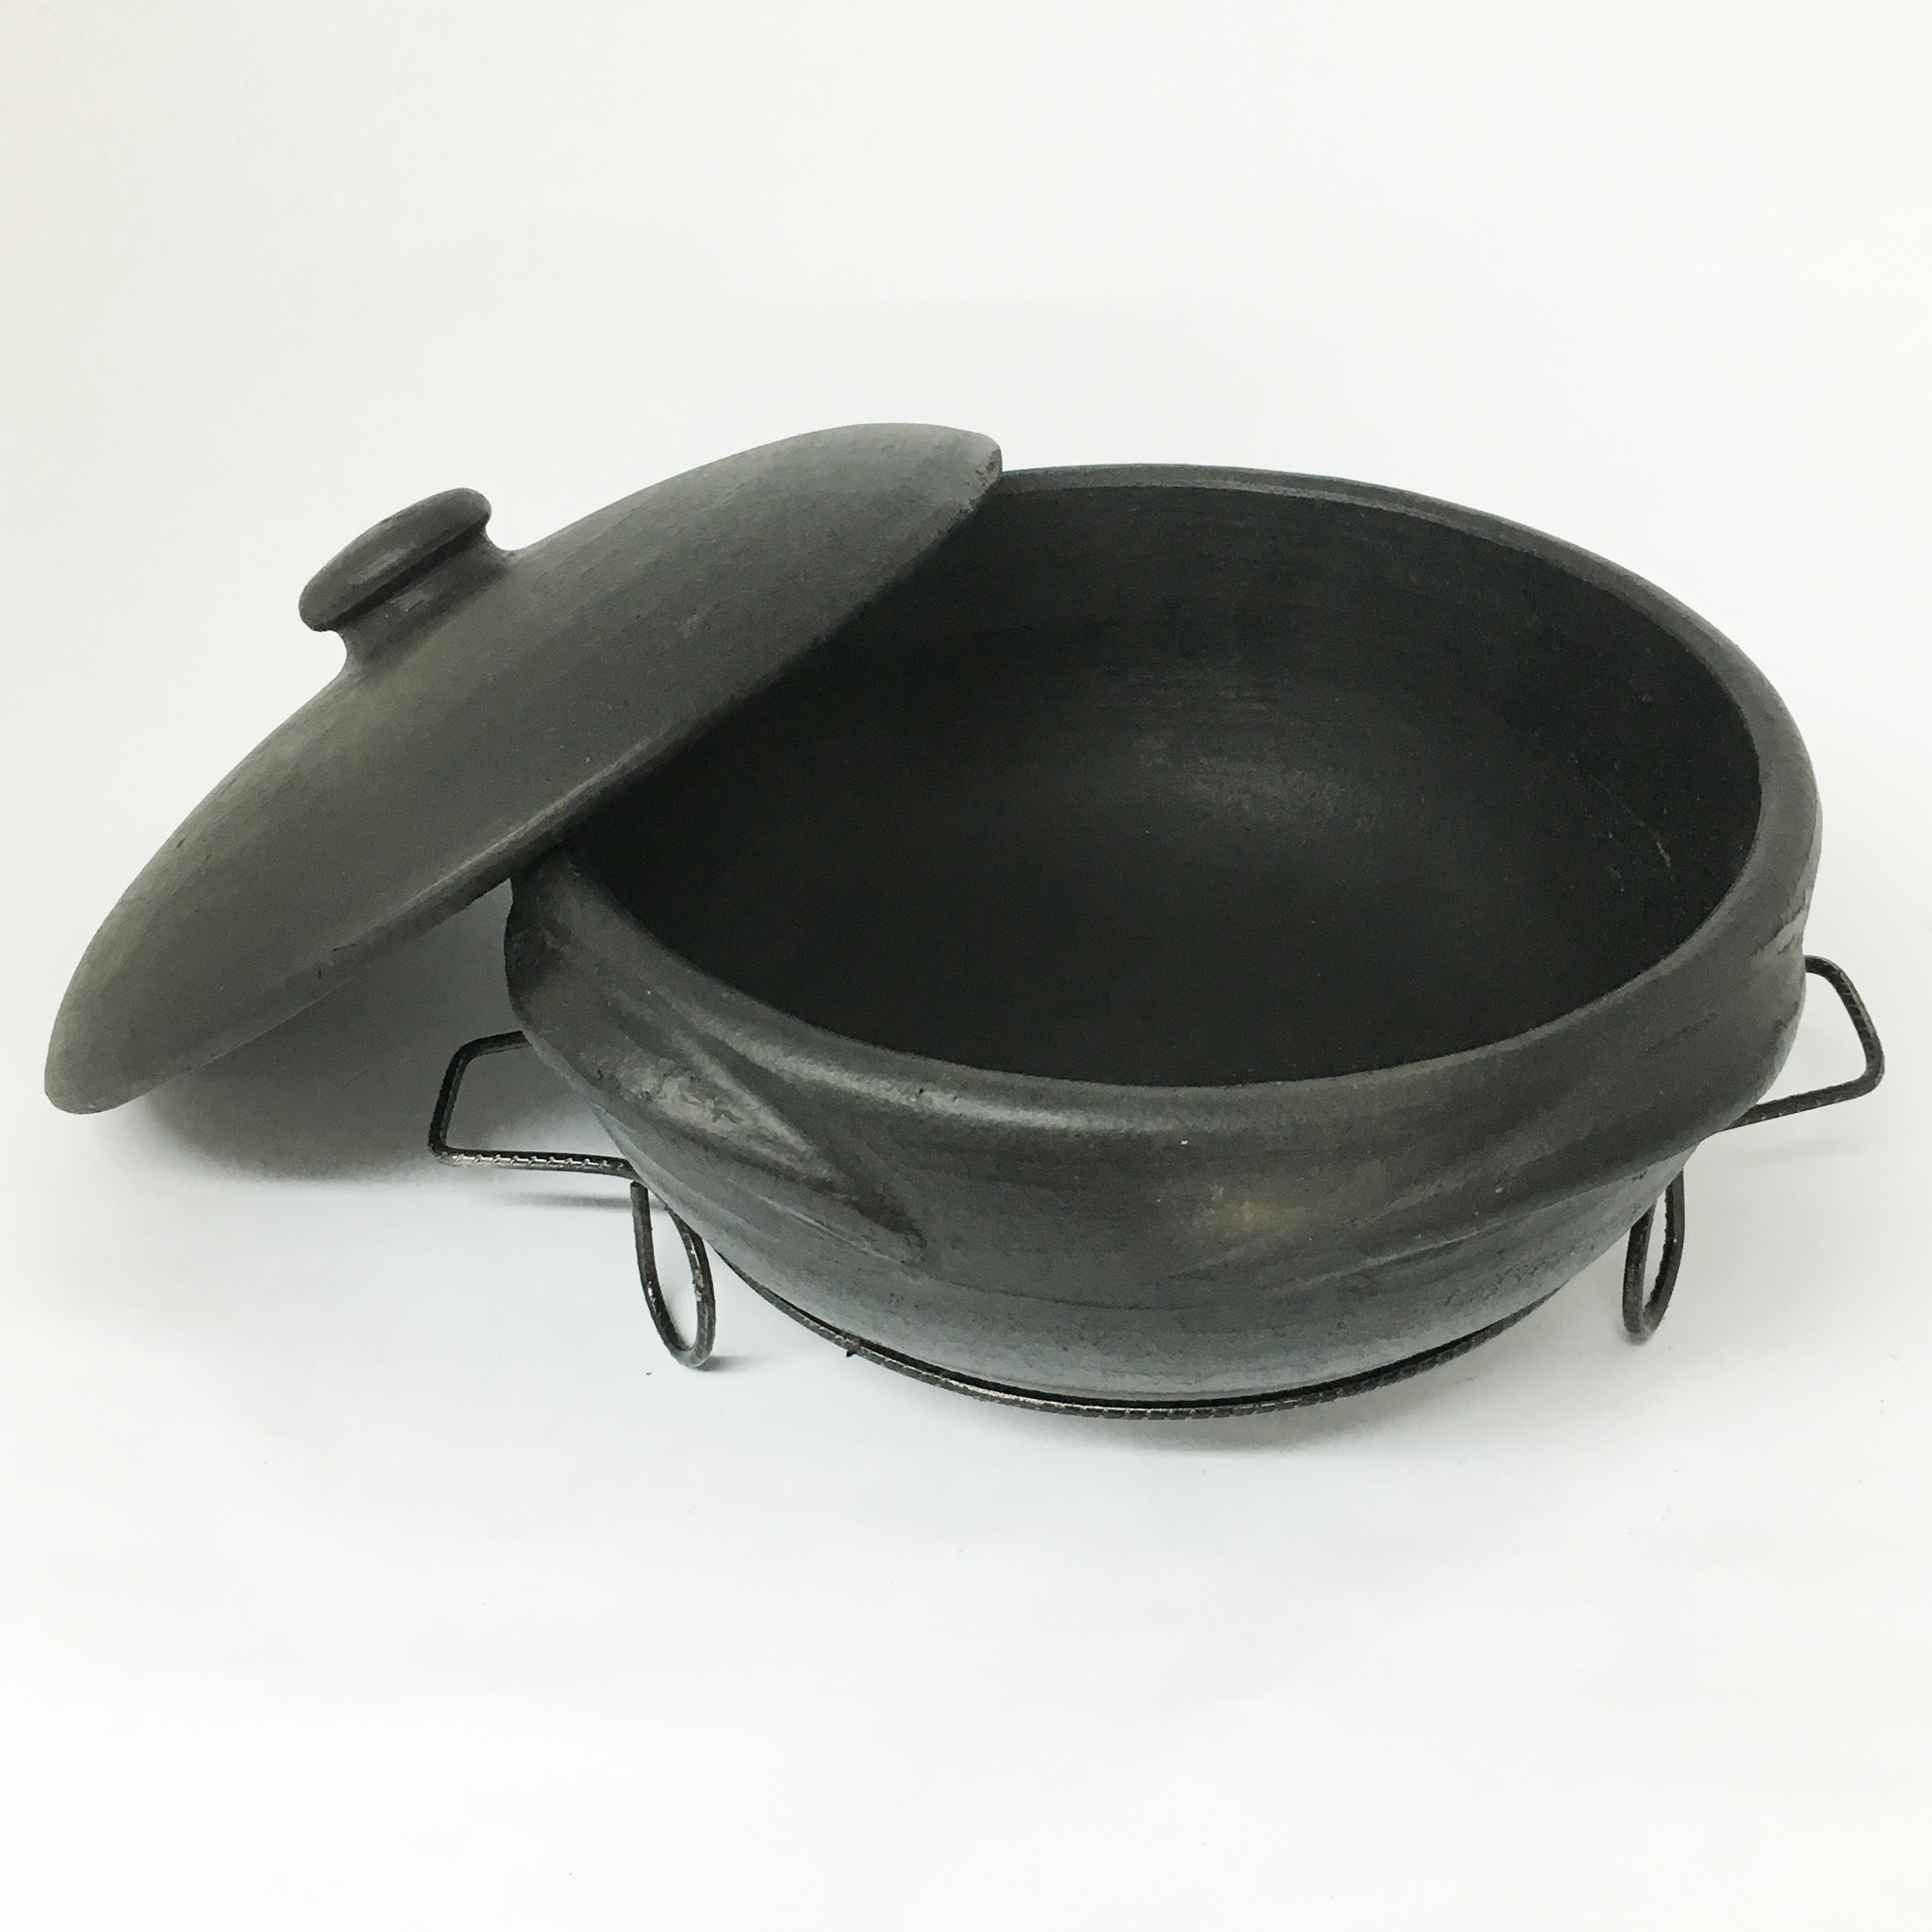 Brazilian Clay Stew Pot, Panela de Barro Capixaba | Ancient Cookware